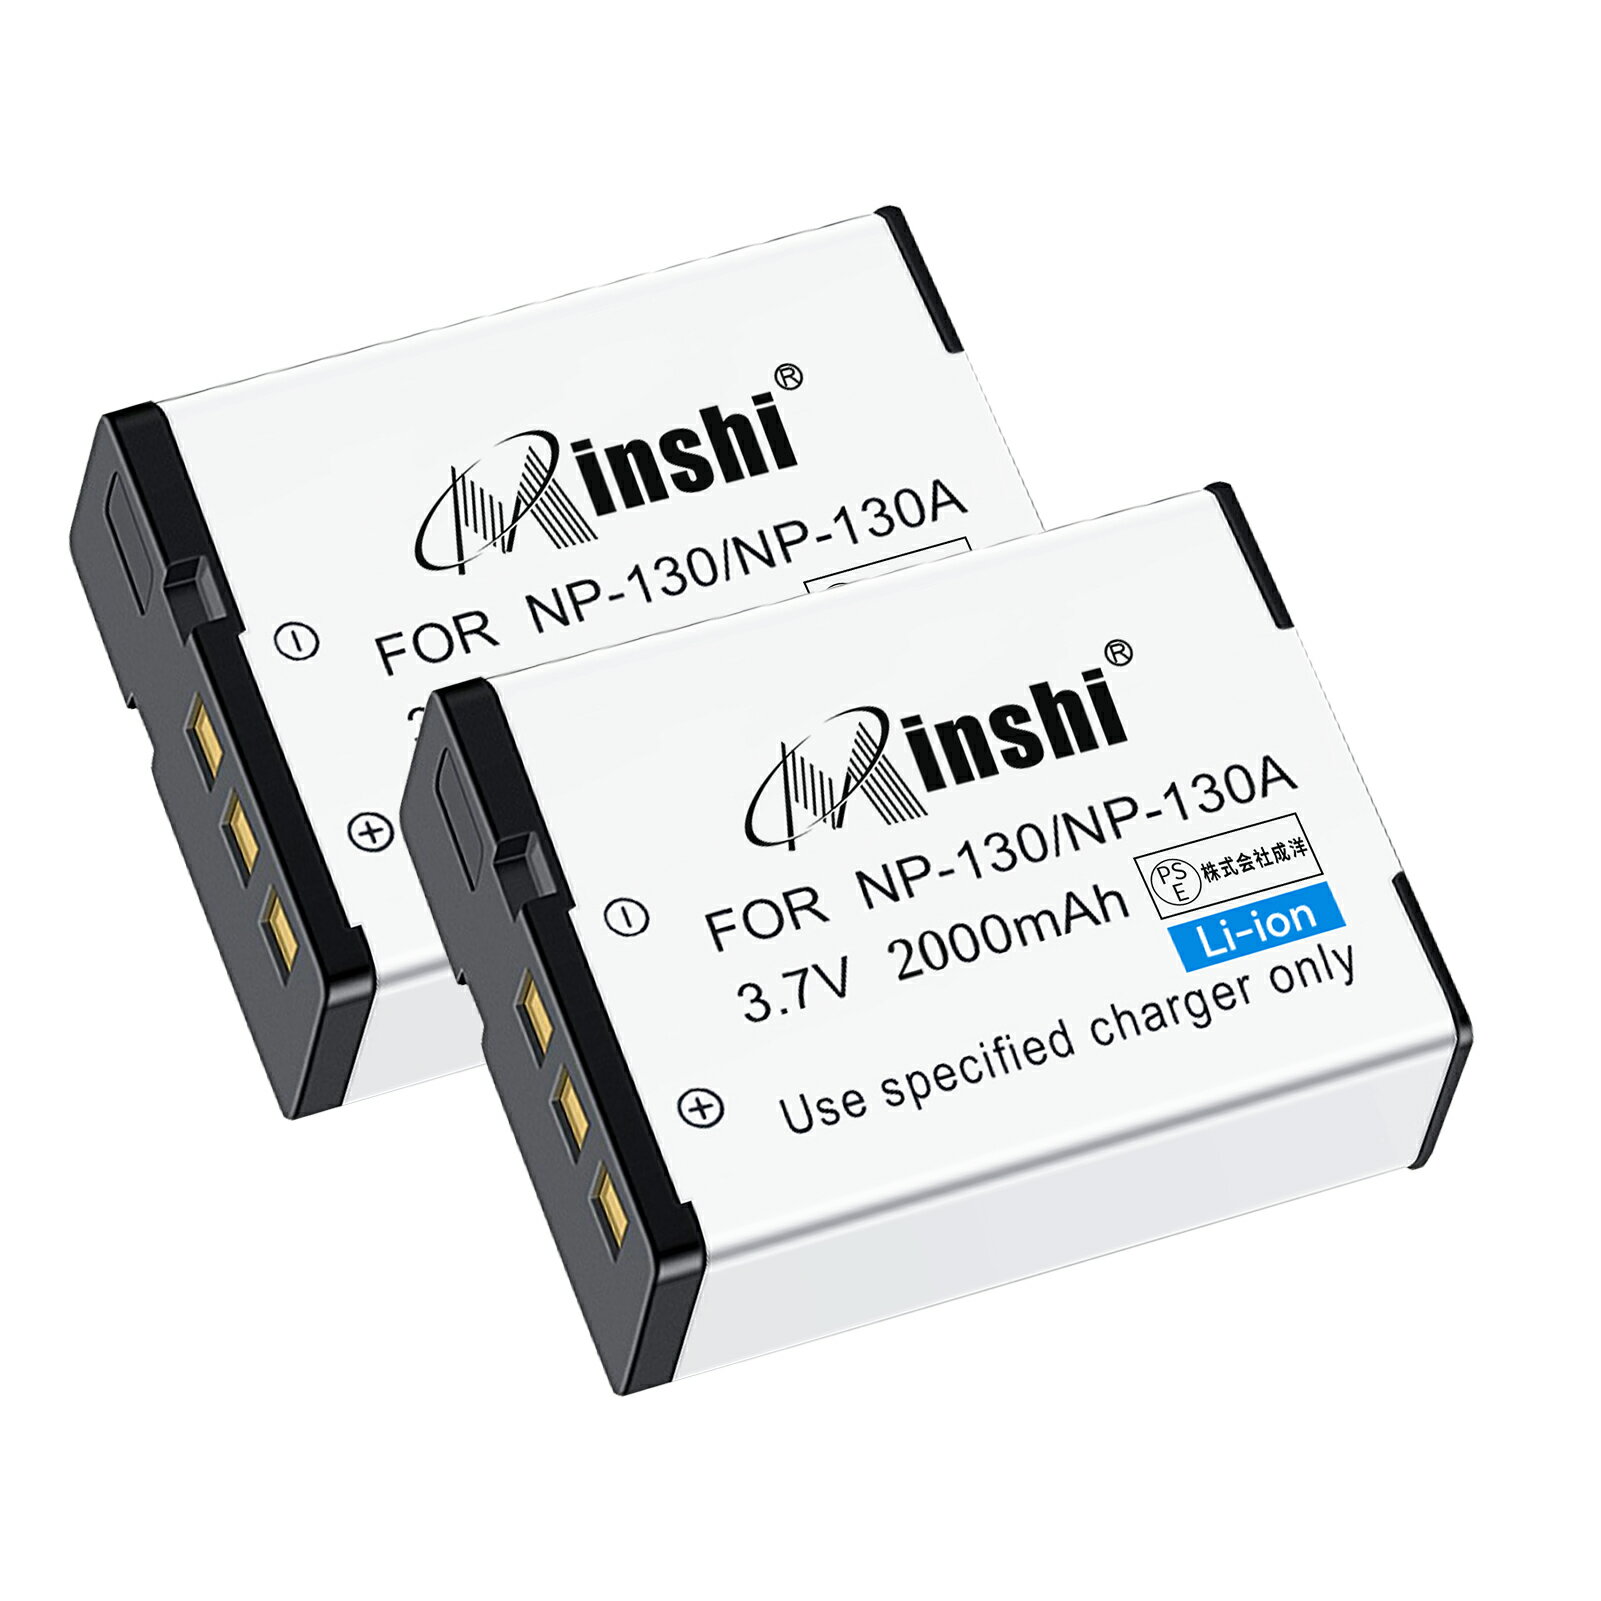 【2個セット】minshi 新品 Casio EX-ZR1000 互換バッテリー 2000mAh 高品質交換用リチャージブル カメラバッテリー リチウムイオンバッテリー デジタルカメラ デジカメ 充電池 PSE認証 1年間保証 予備バッテリー